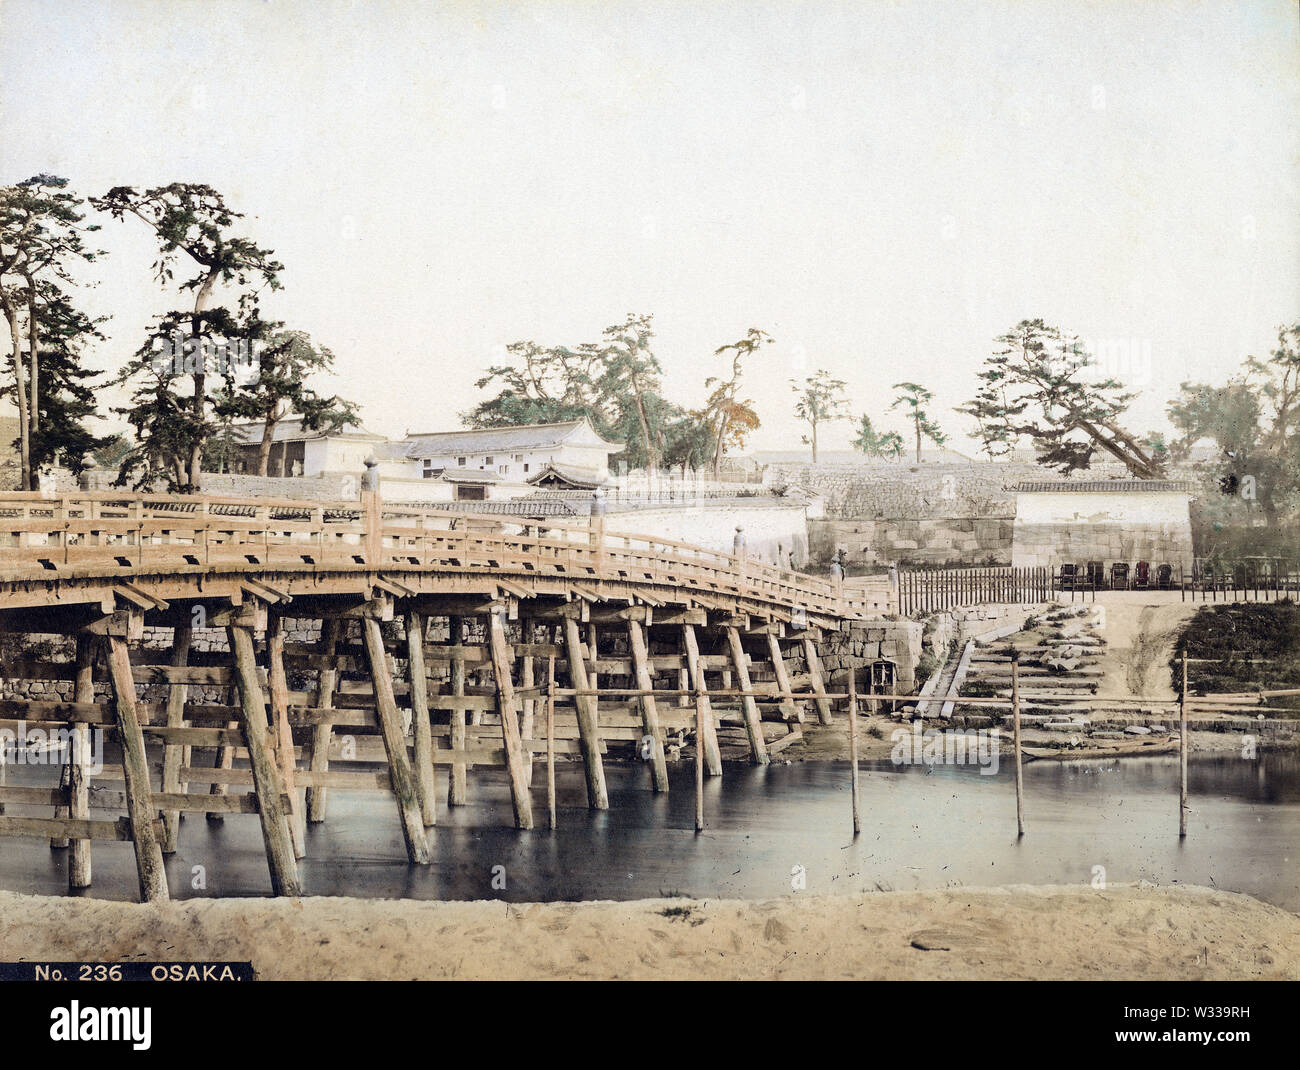 [ 1860 Giappone - Kyobashi Bridge presso il Castello di Osaka ] - Un estremamente raro in vista del legno di Kyobashi ponte che attraversa il fiume Neyagawa (寝屋川) presso il Castello di Osaka, Osaka, ca. 1860s (inizio Meiji). Il ponte, prima eretta nel 1623, è stato chiamato Kyobashi perché la strada è collegato al conduttore a Kyoto (京街道, Kyokaido). Nel 1885 (Meiji 18) Il ponte è stato lavato via durante un allagamento e sostituito con un ferro da costruzione. Xix secolo albume vintage fotografia. Foto Stock